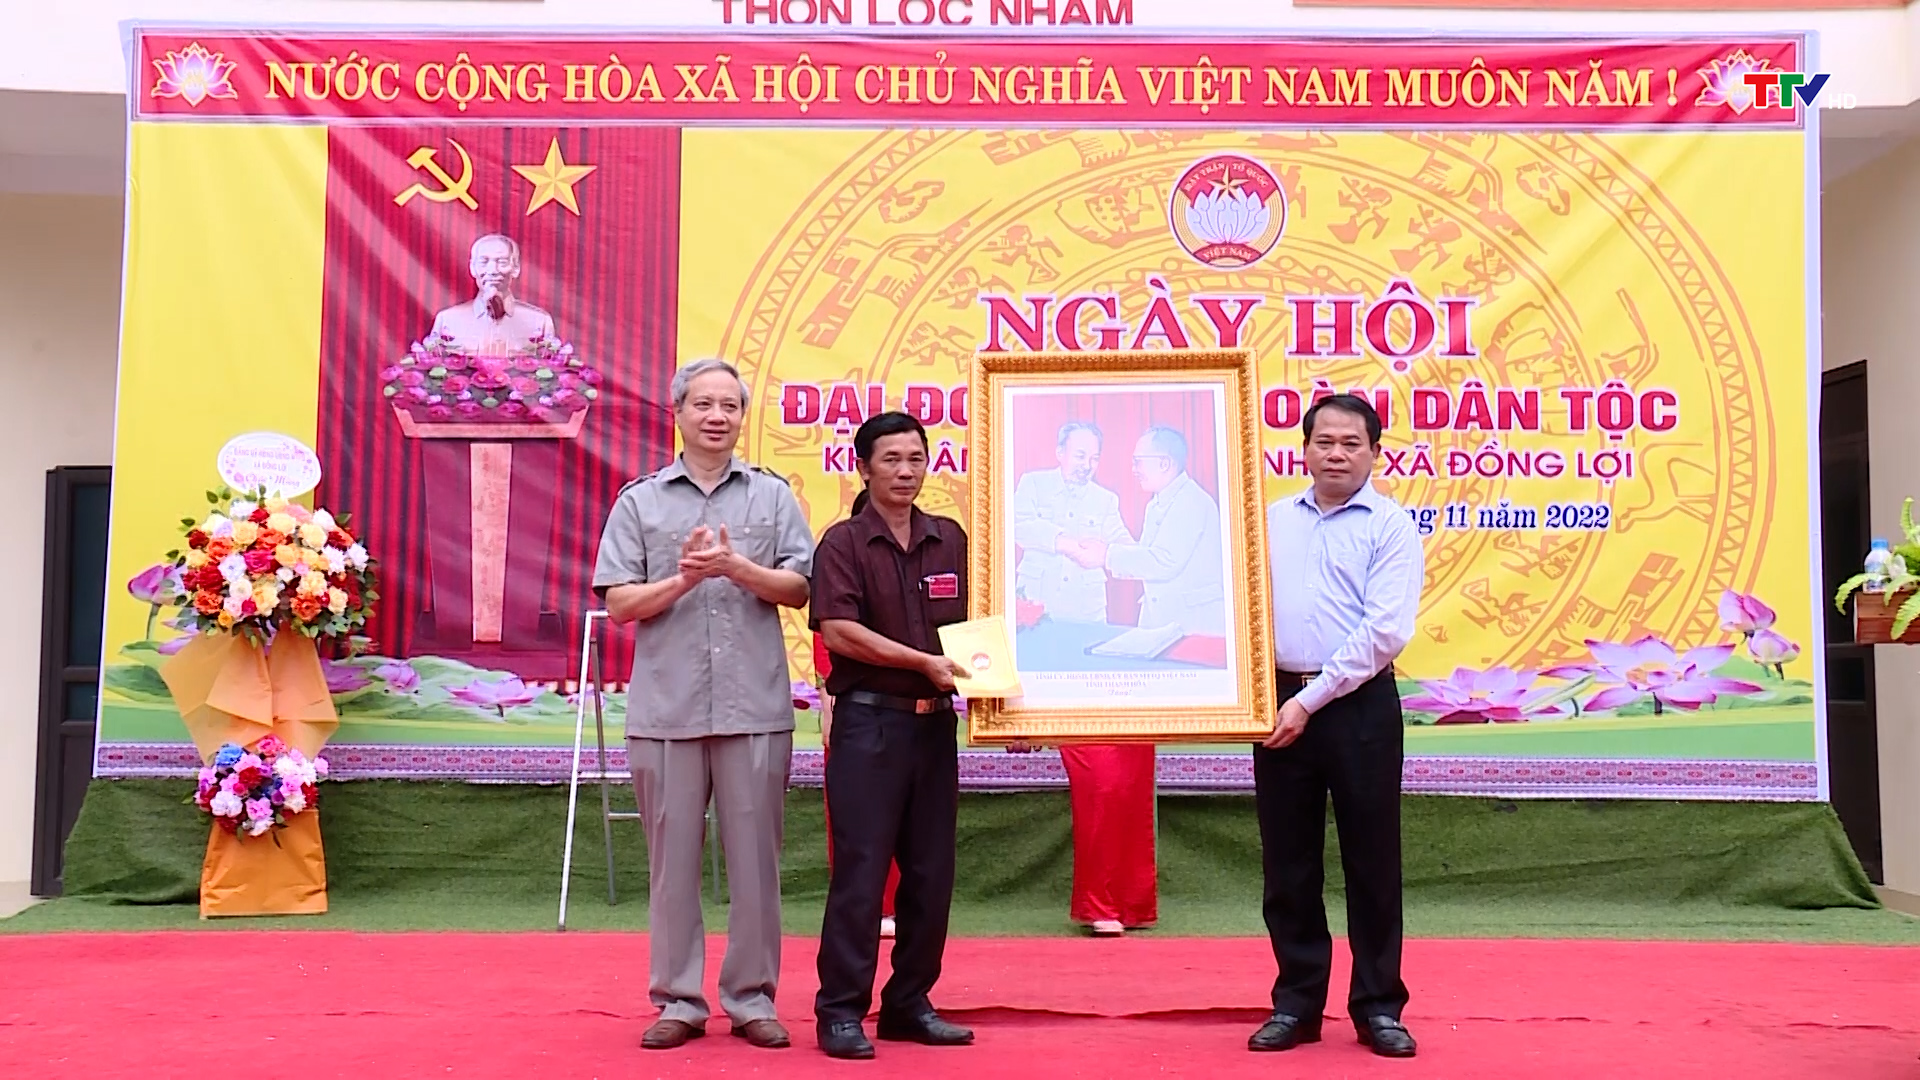 Đồng chí Trưởng Ban Tổ chức Tỉnh ủy dự Ngày hội Đại đoàn kết toàn dân tộc tại thôn Lộc Nham - Ảnh 3.